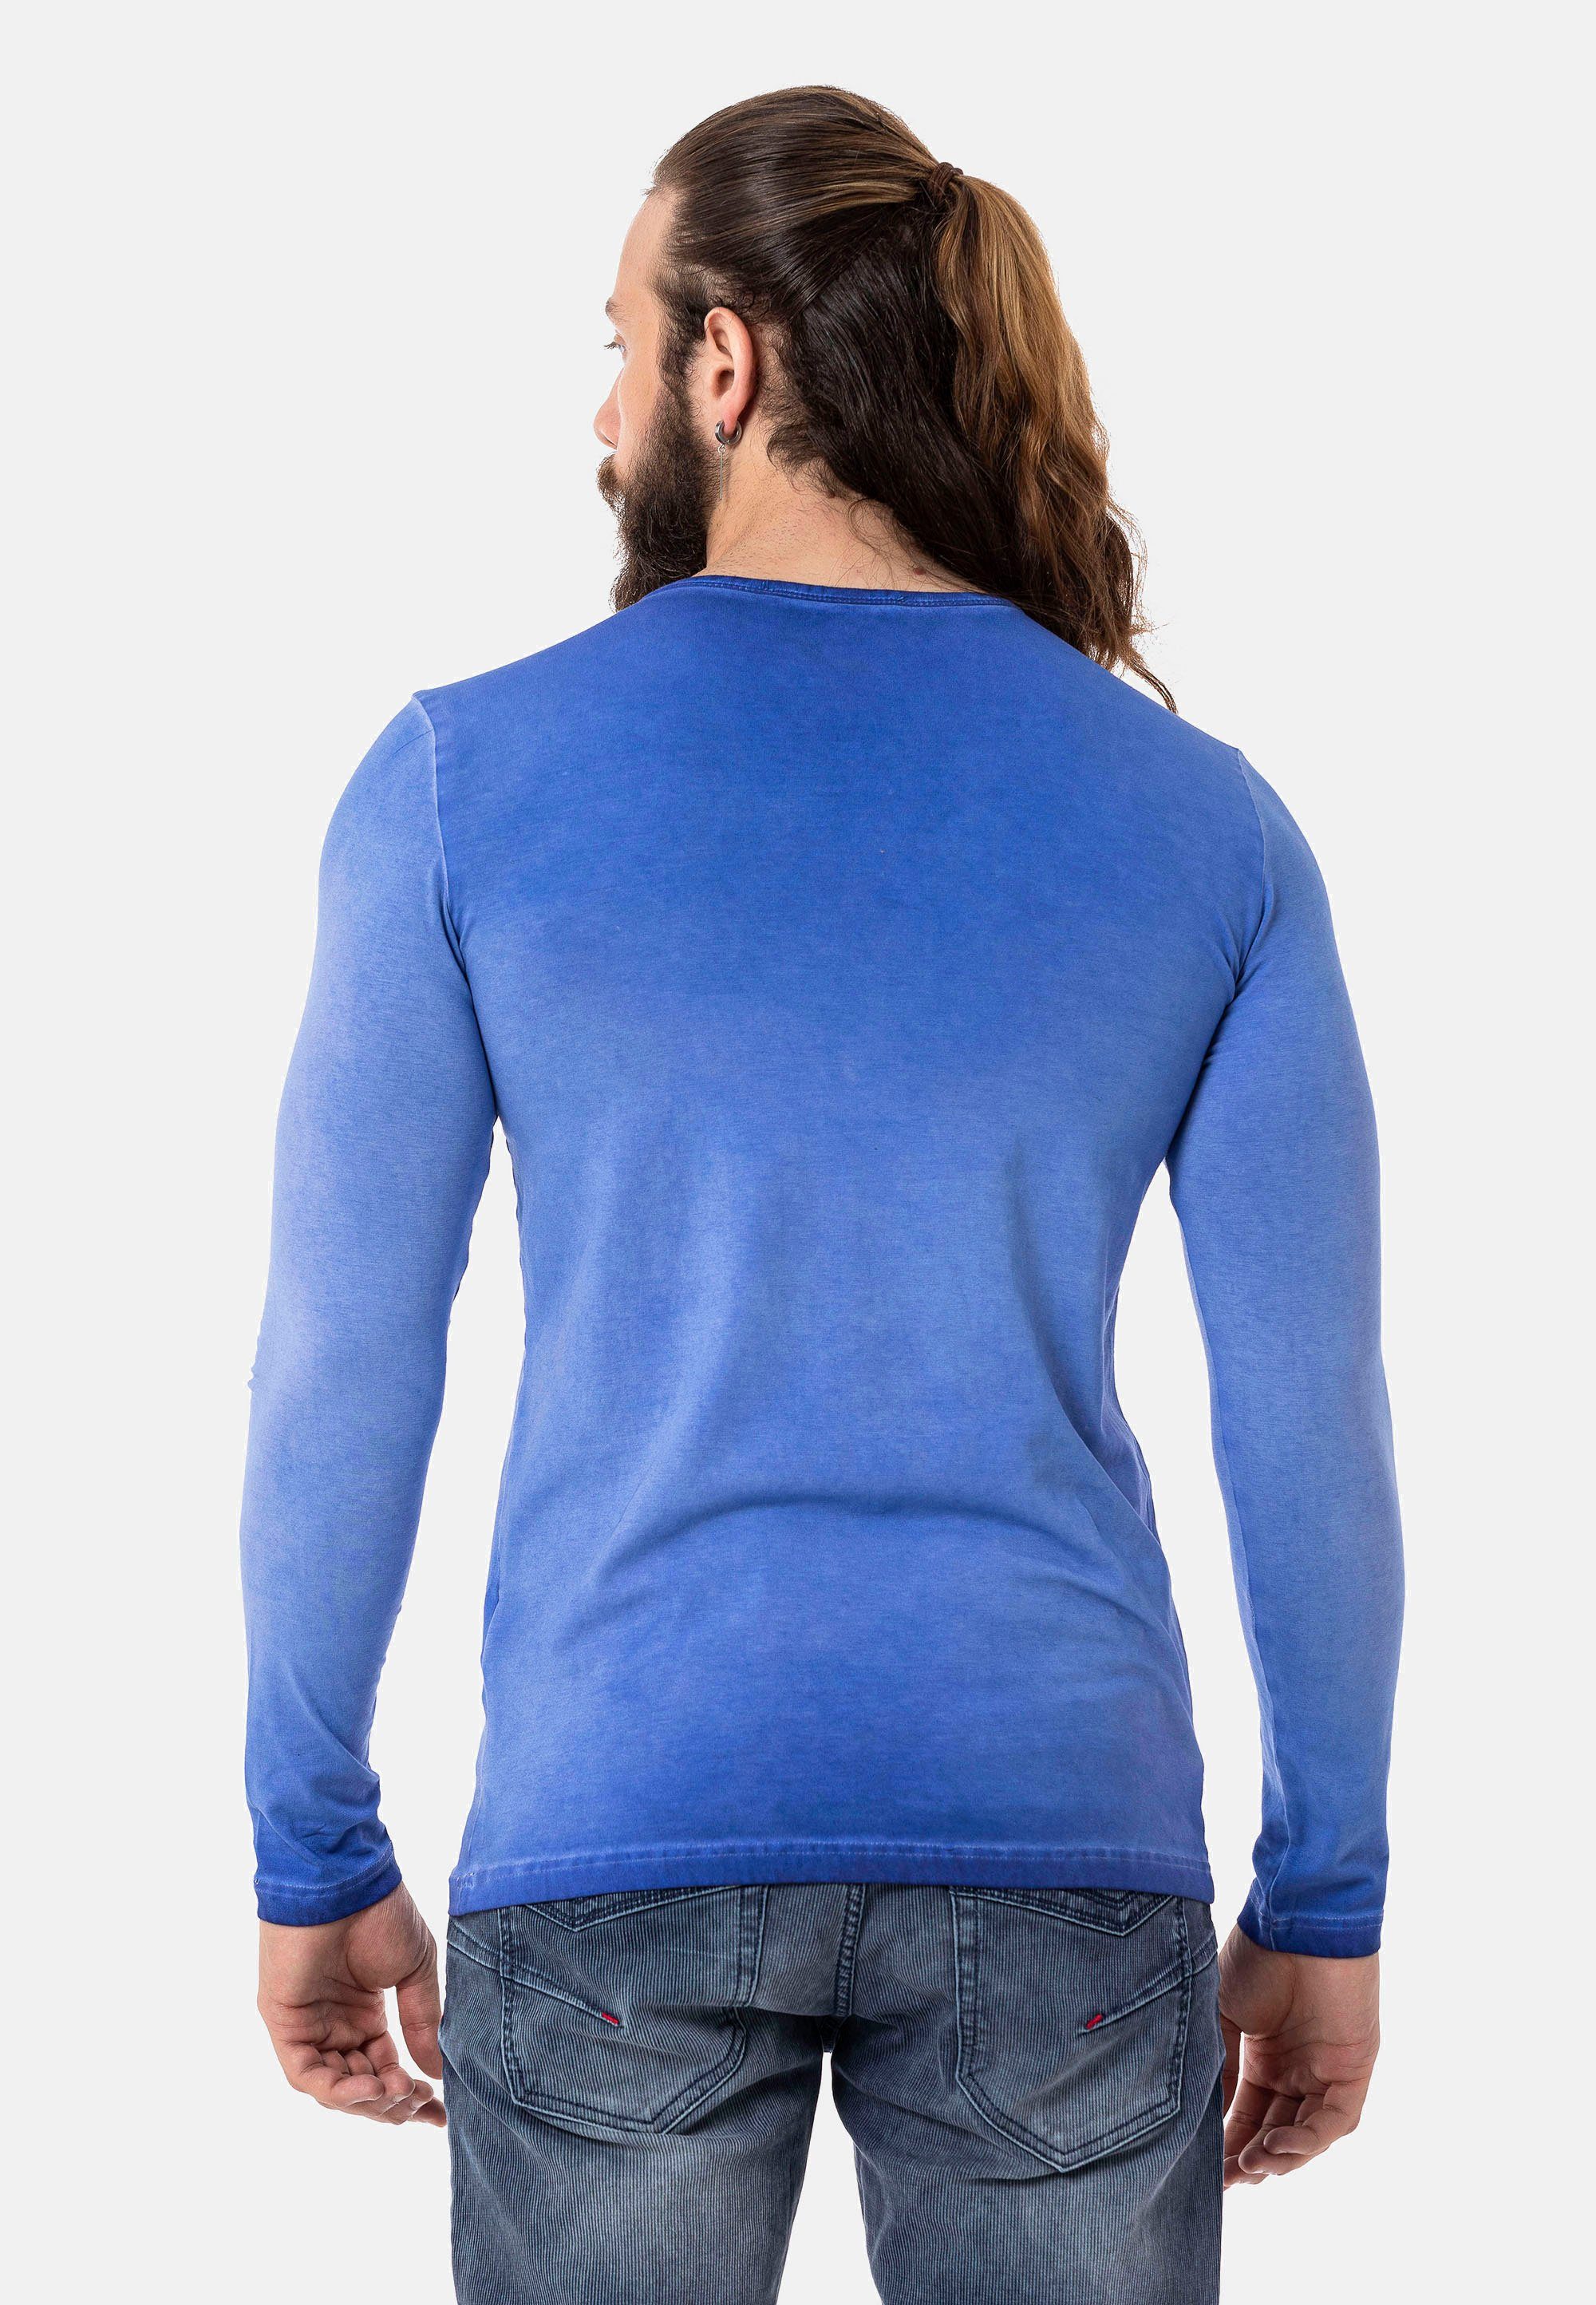 Cipo & Baxx Langarmshirt mit blau stylischen Prints